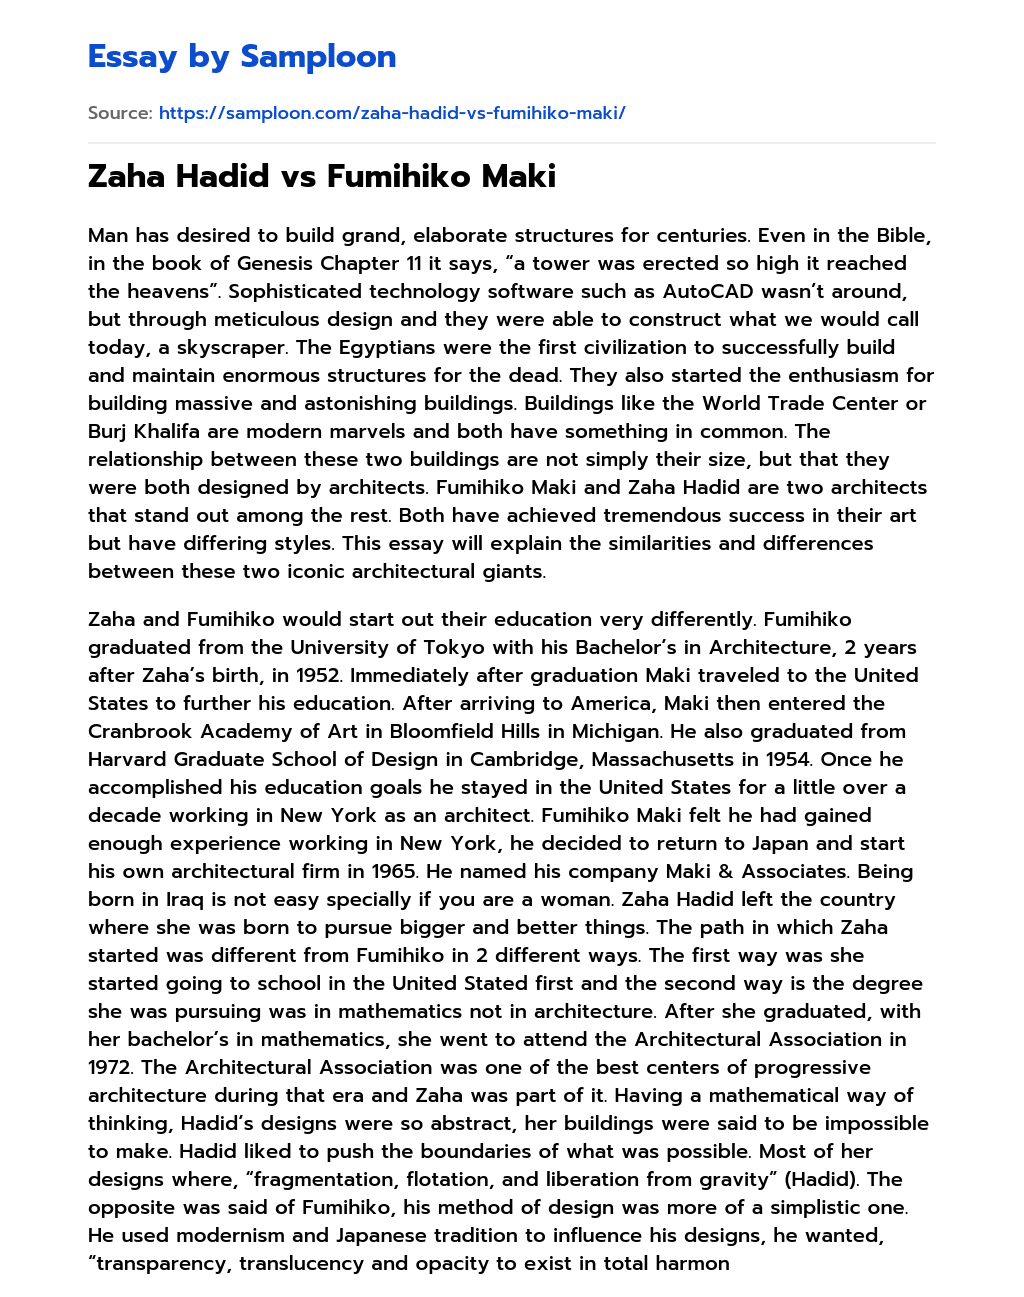 Zaha Hadid vs Fumihiko Maki essay